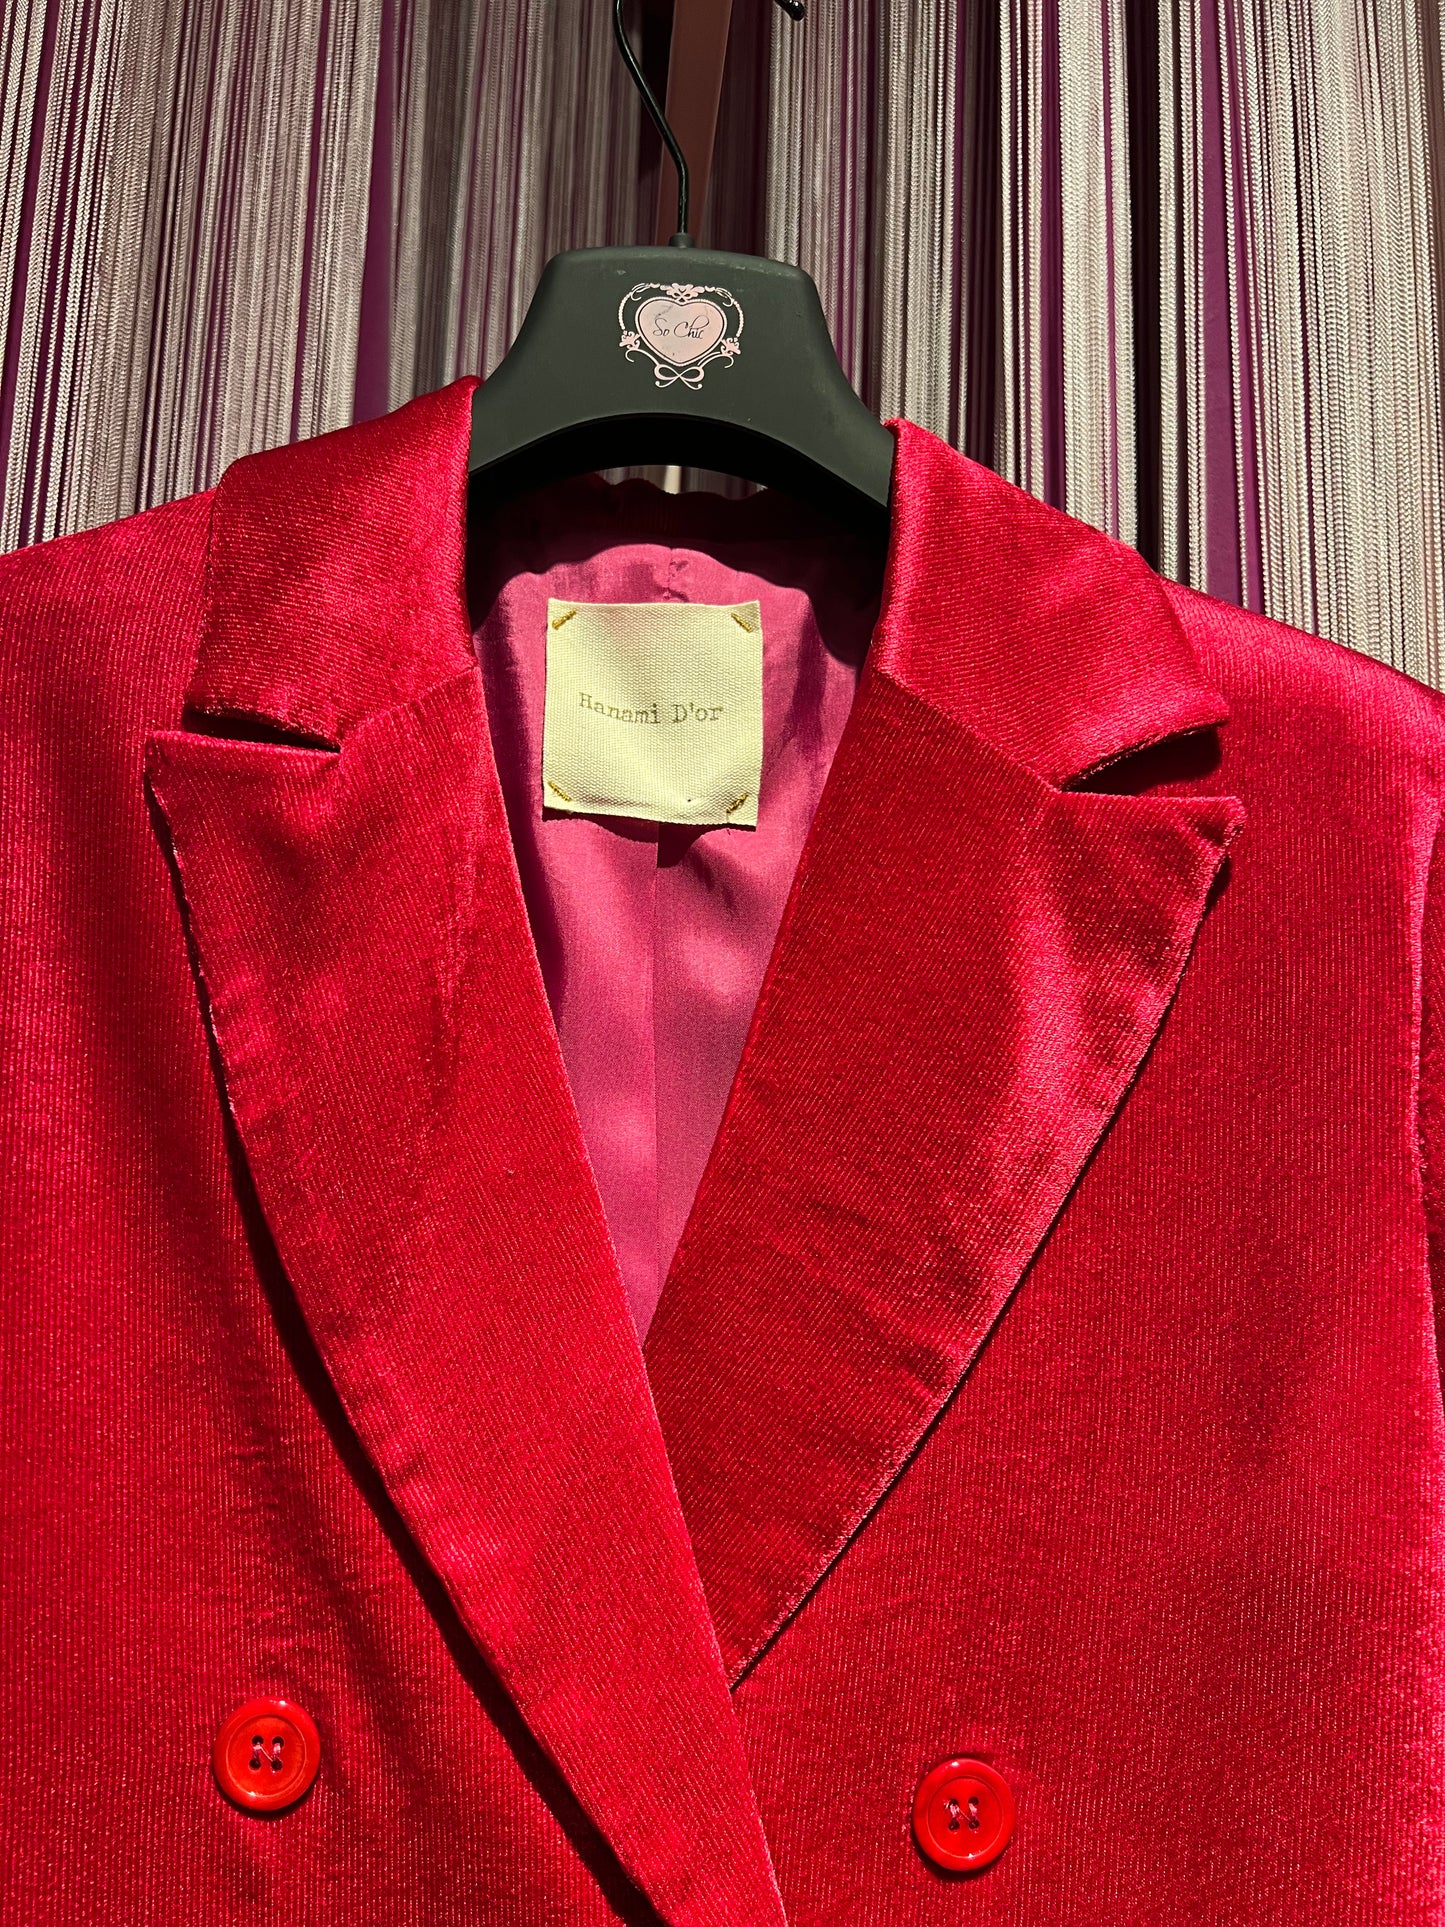 Hanami D’or giacca doppiopetto velluto rubino Otilde sconto 50%